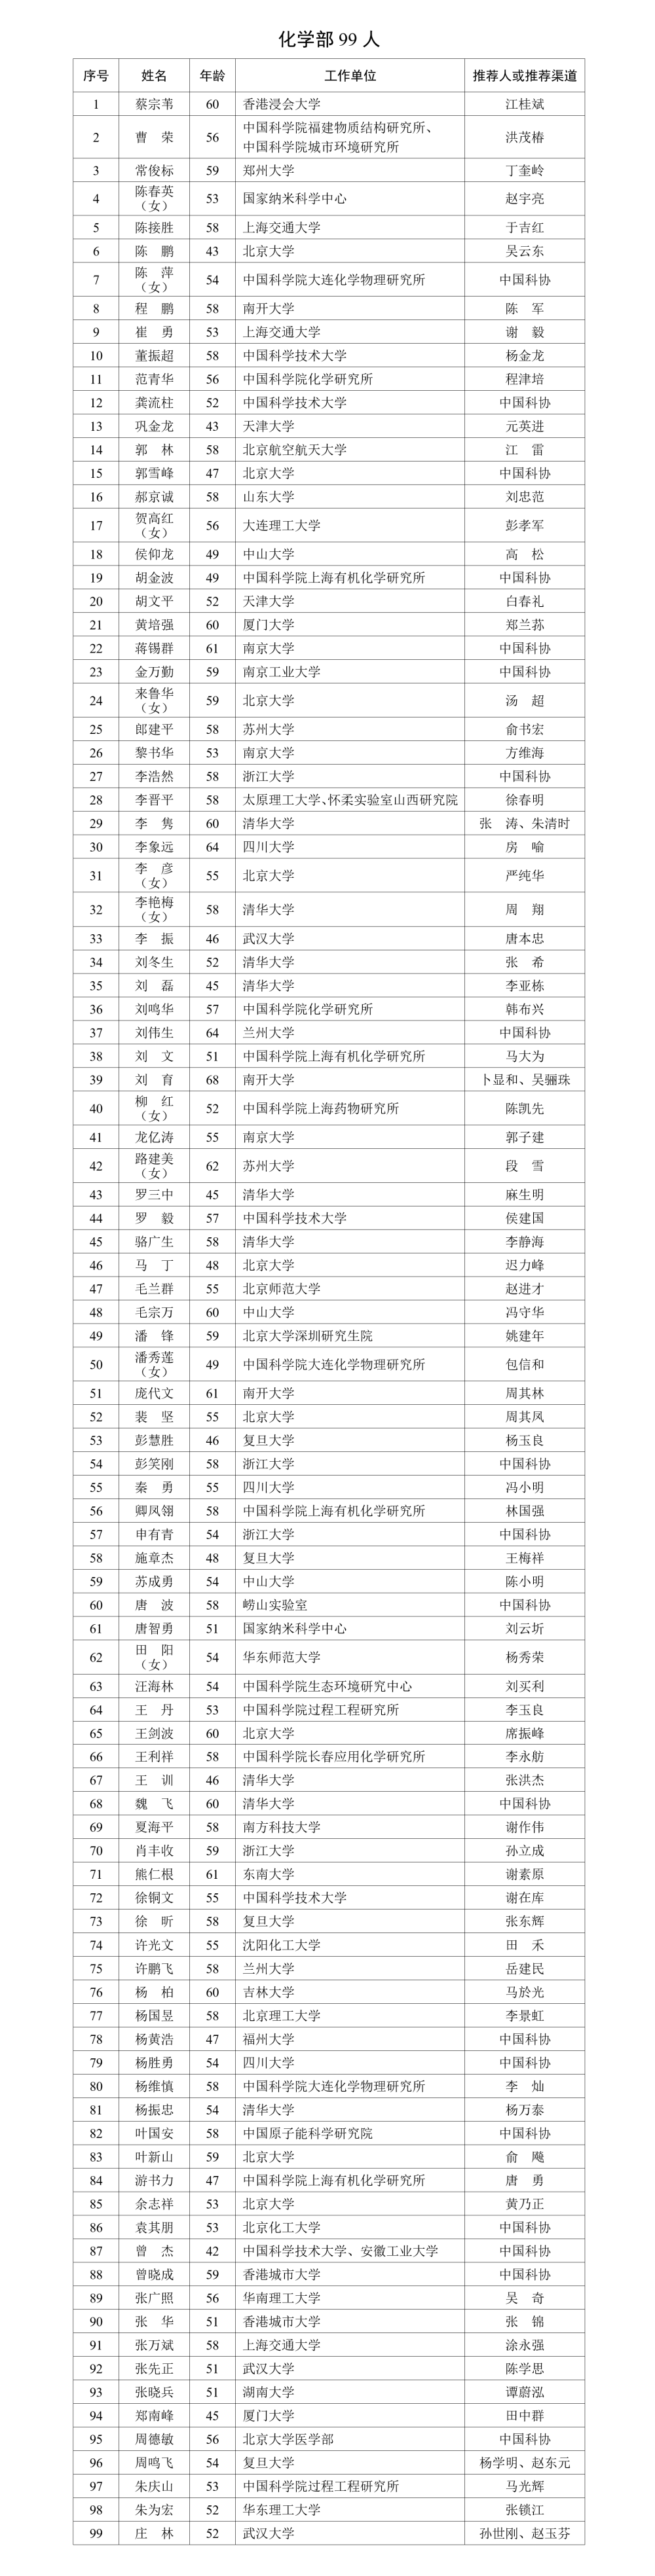 中国工程院2023年院士增选  有效候选人名单